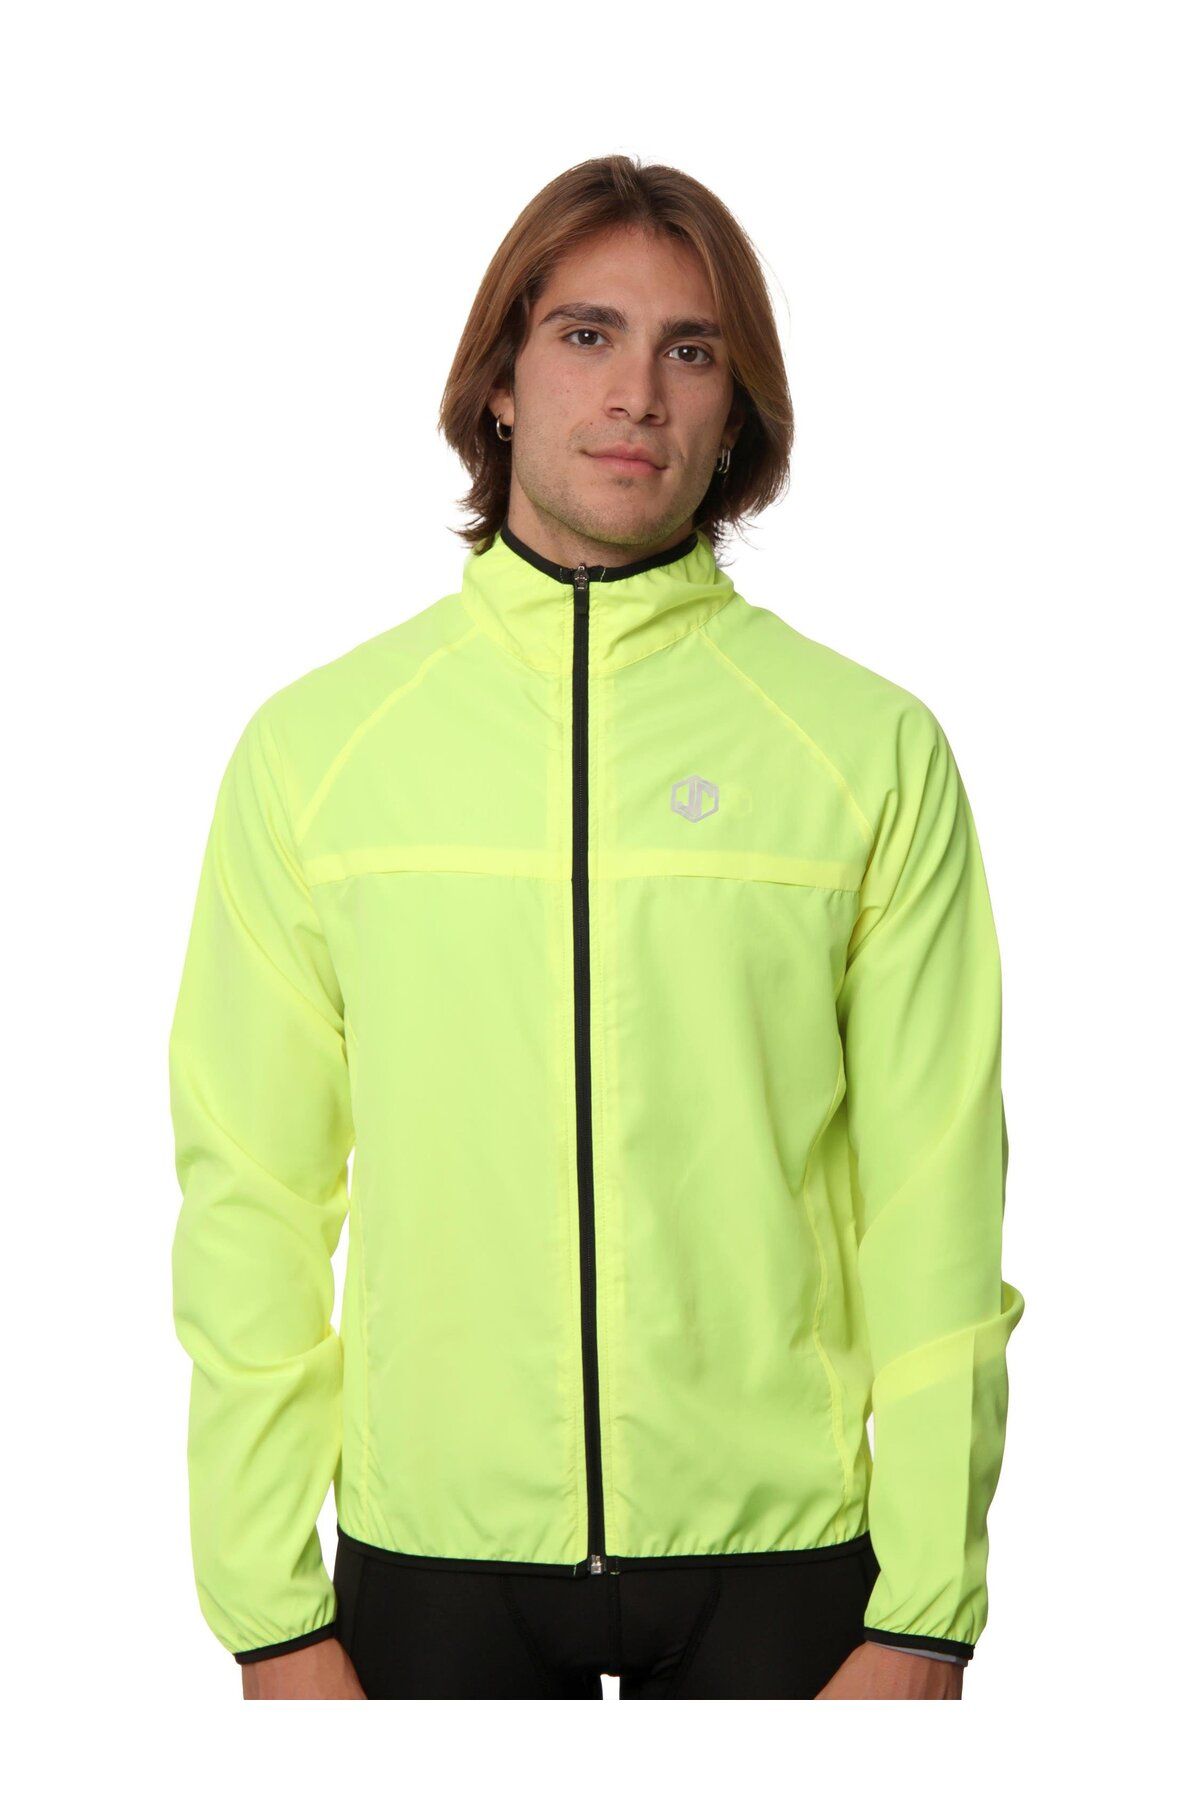 Jordanred Neon Sarı Bisikletçi Yağmurluğu